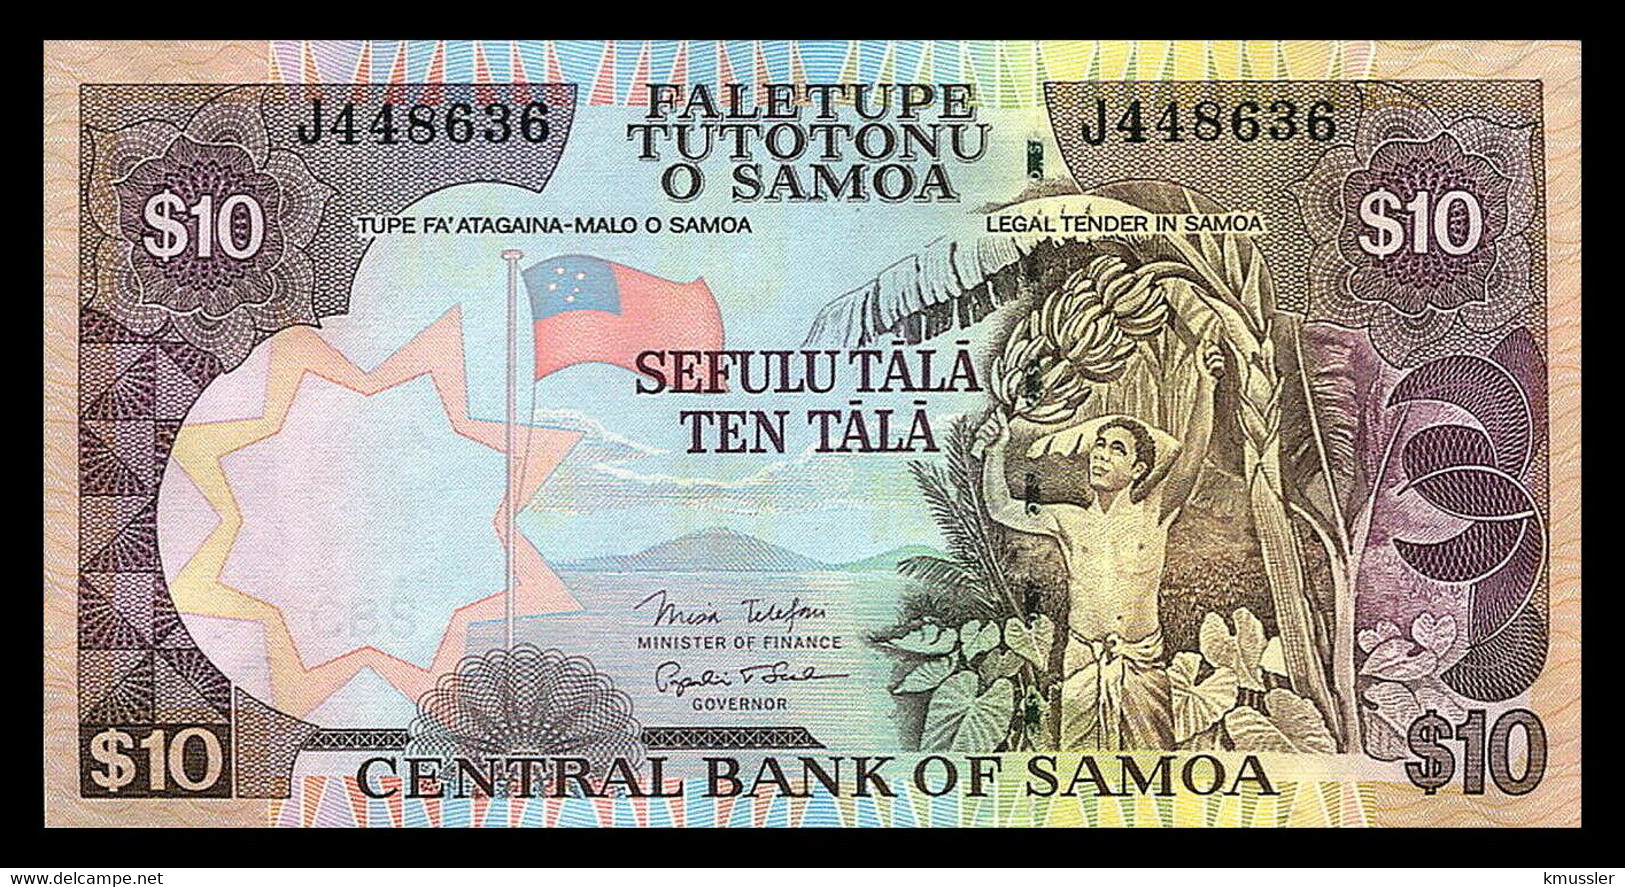 # # # Banknote Samoa 10 Tala ND UNC # # # - Samoa